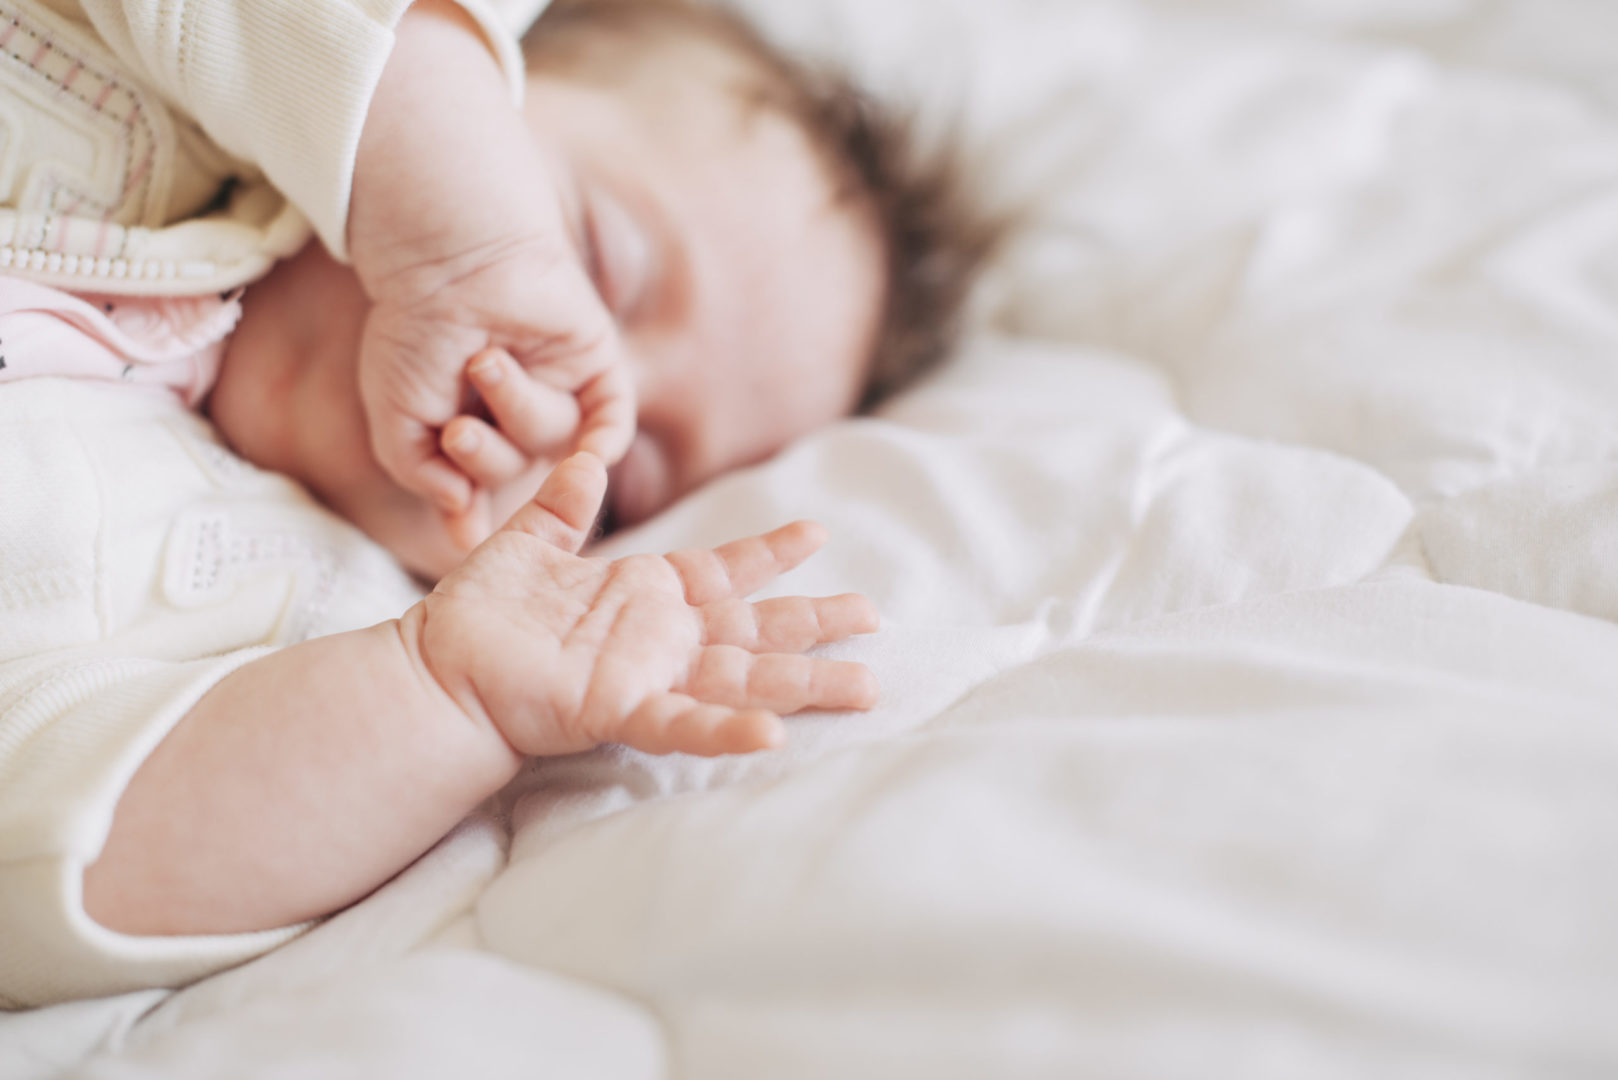 Promote Safe Infant Sleep